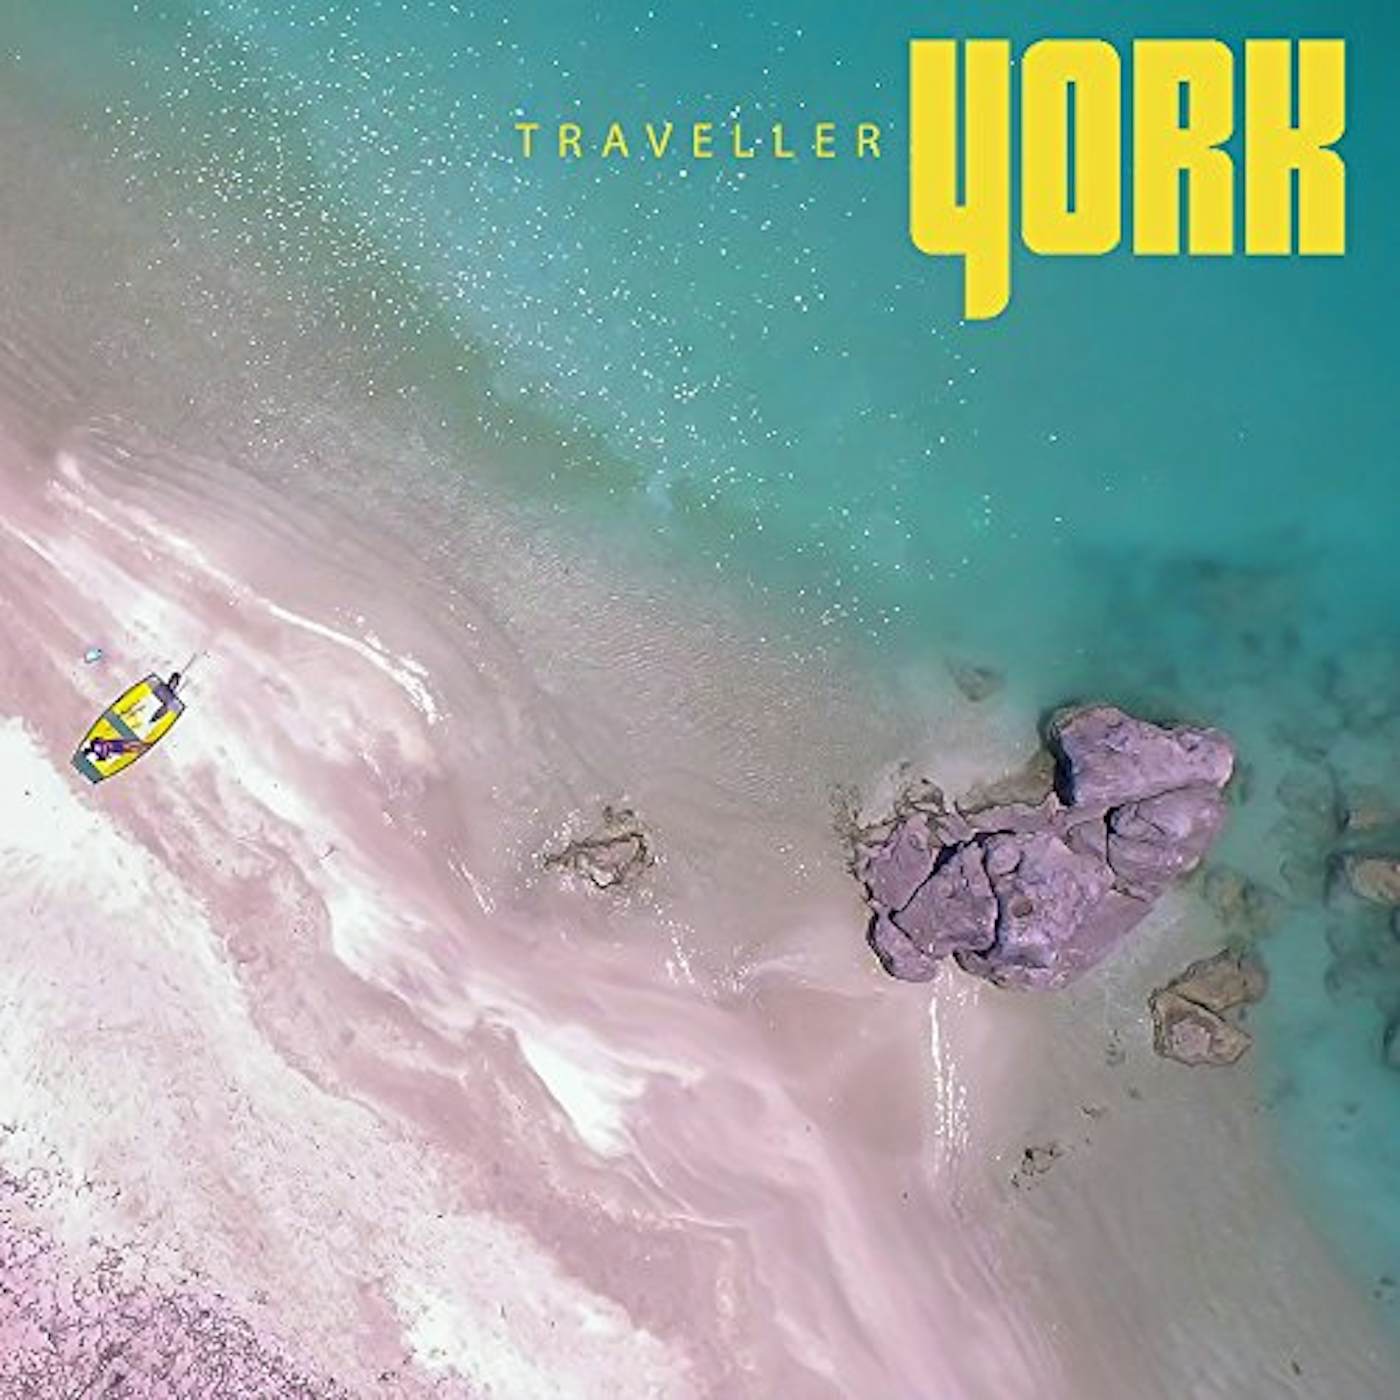 York TRAVELLER CD